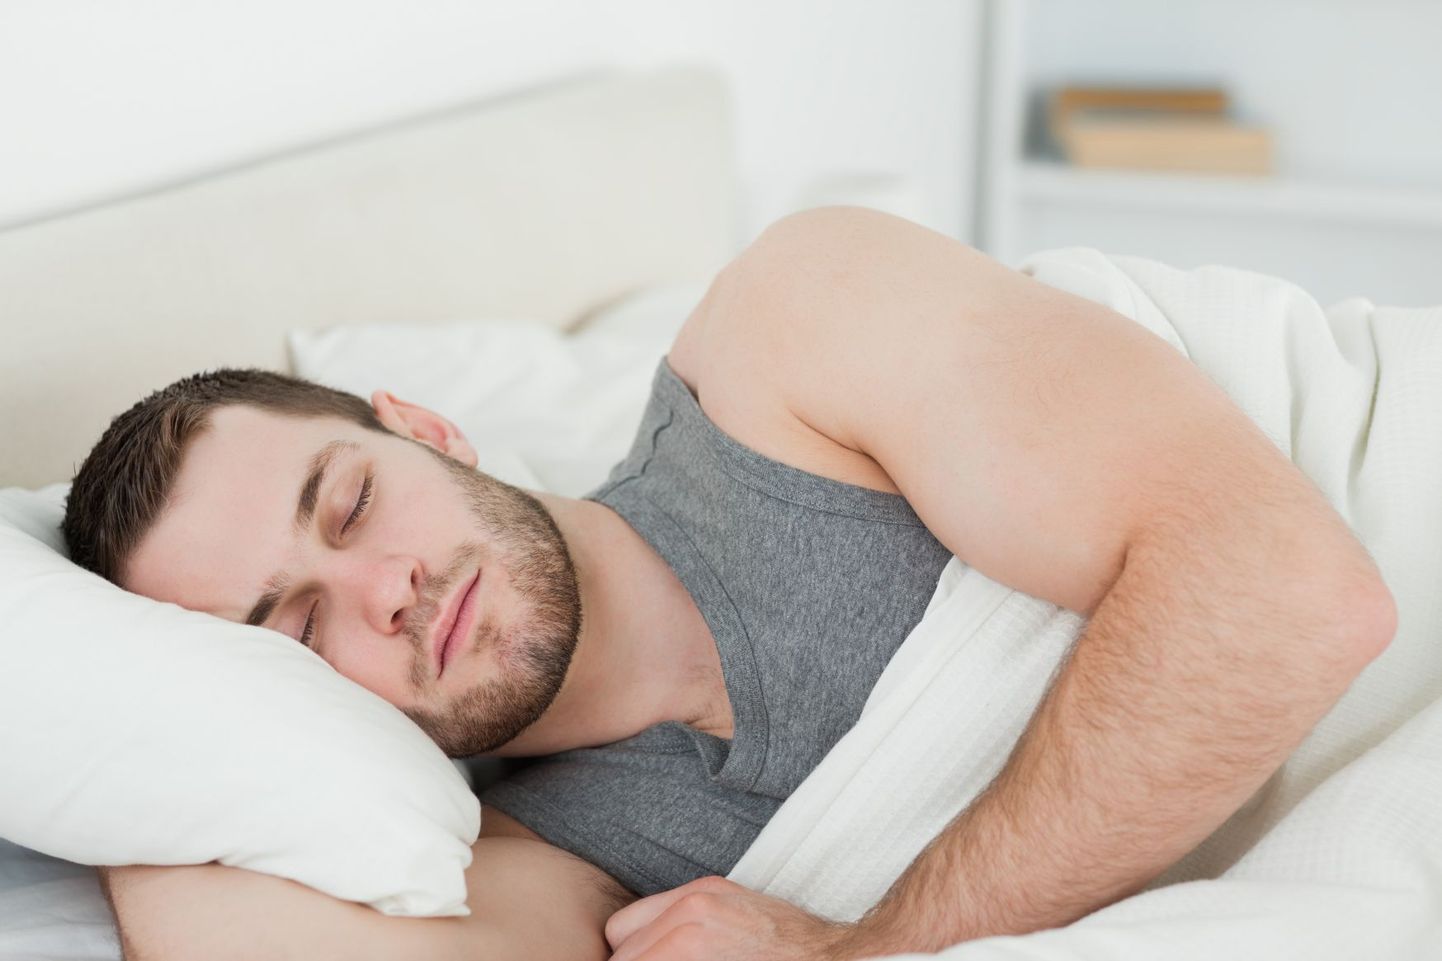 Väike lihaste tõmblemine enne magama jäämist on täiesti normaalne nähtus.